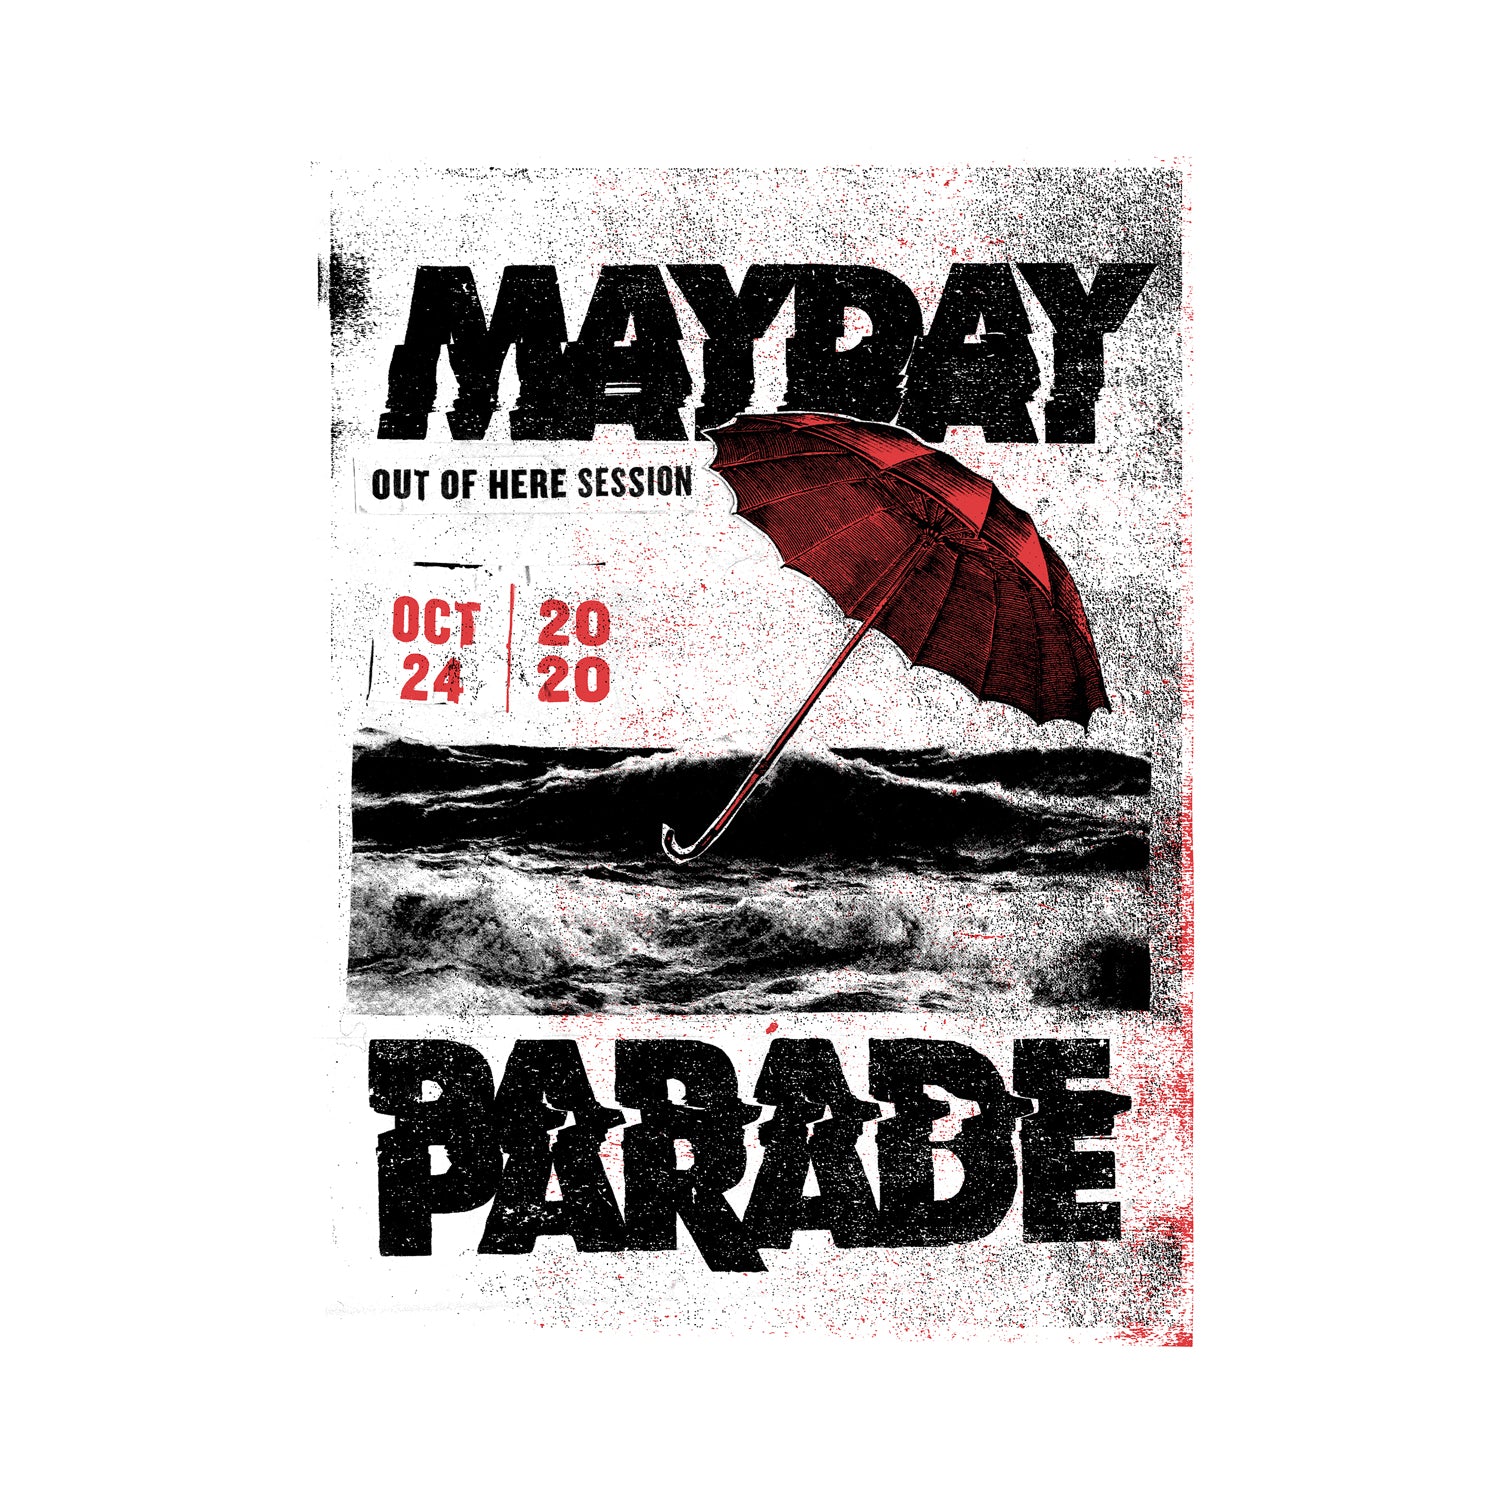 Photo Book – Mayday Parade